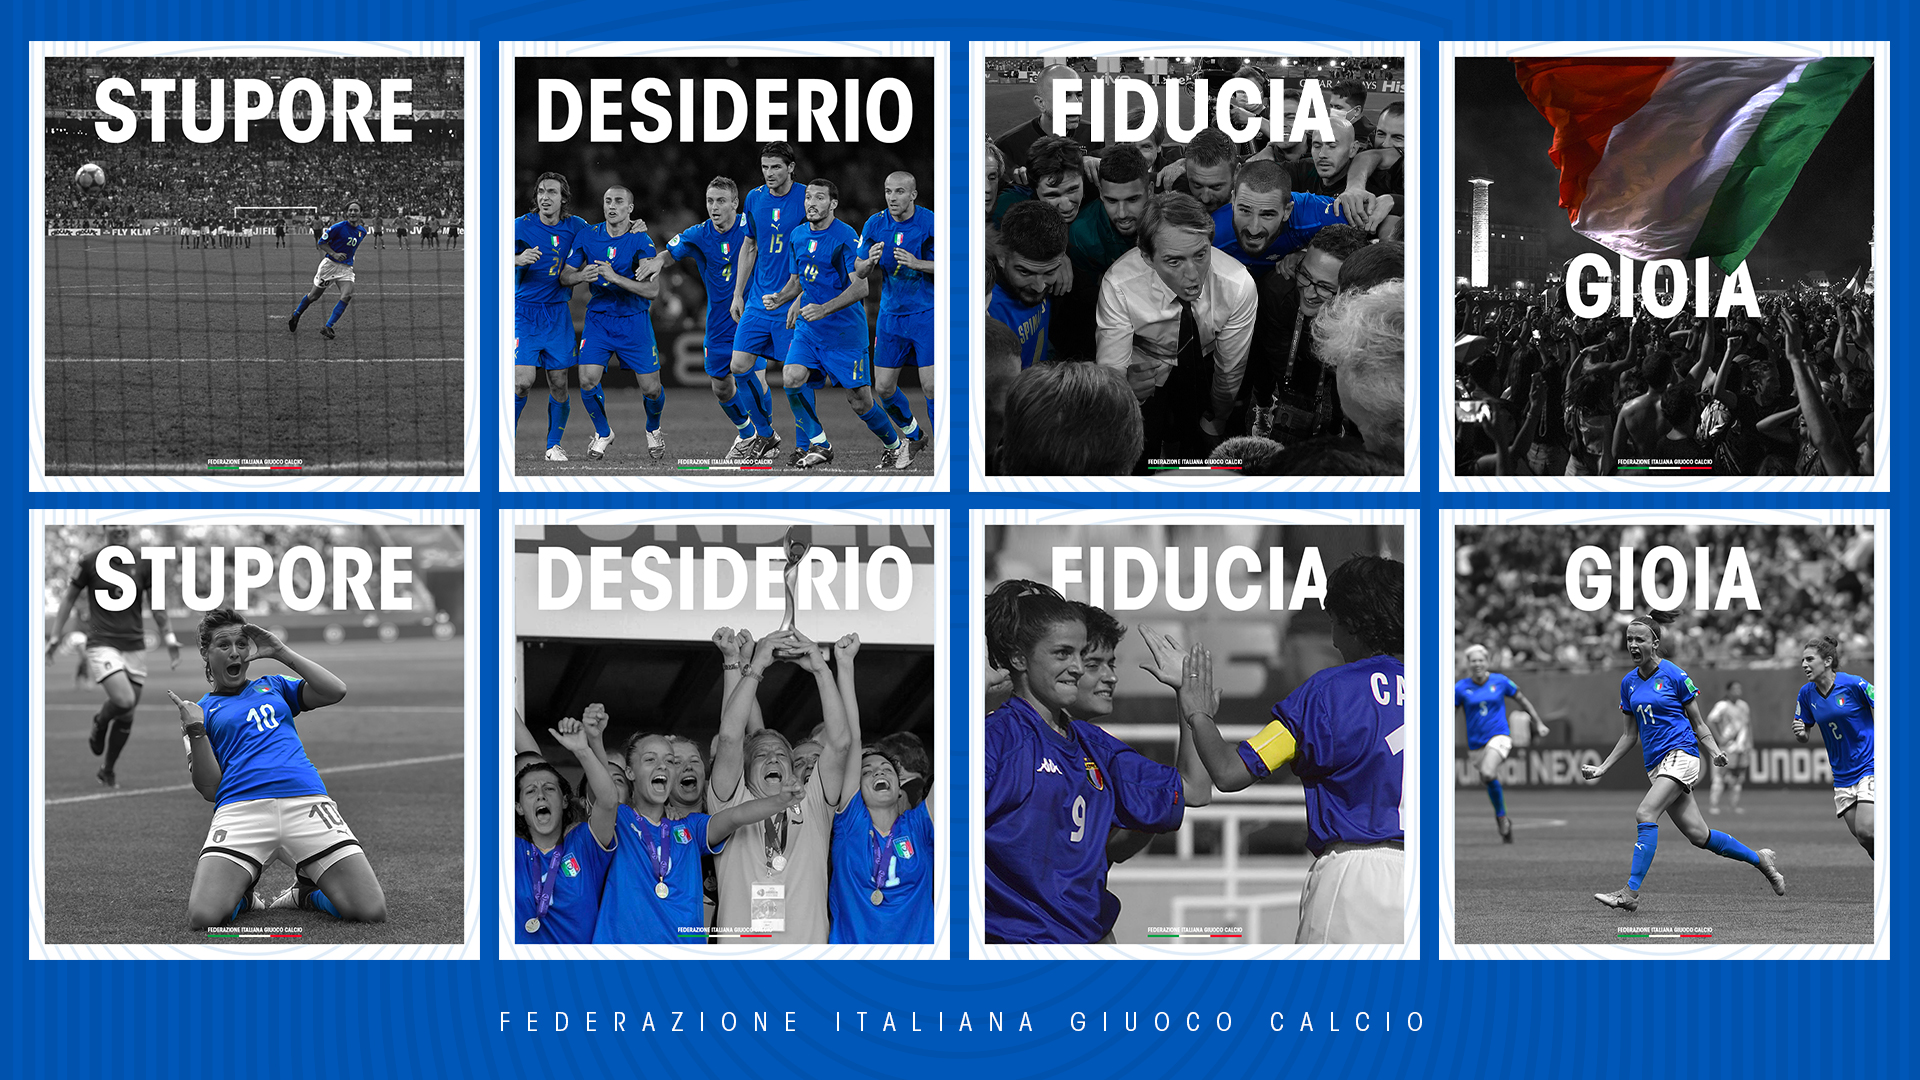 La FIGC completa il rebranding: per le Nazionali nuovo scudetto e identità sonora